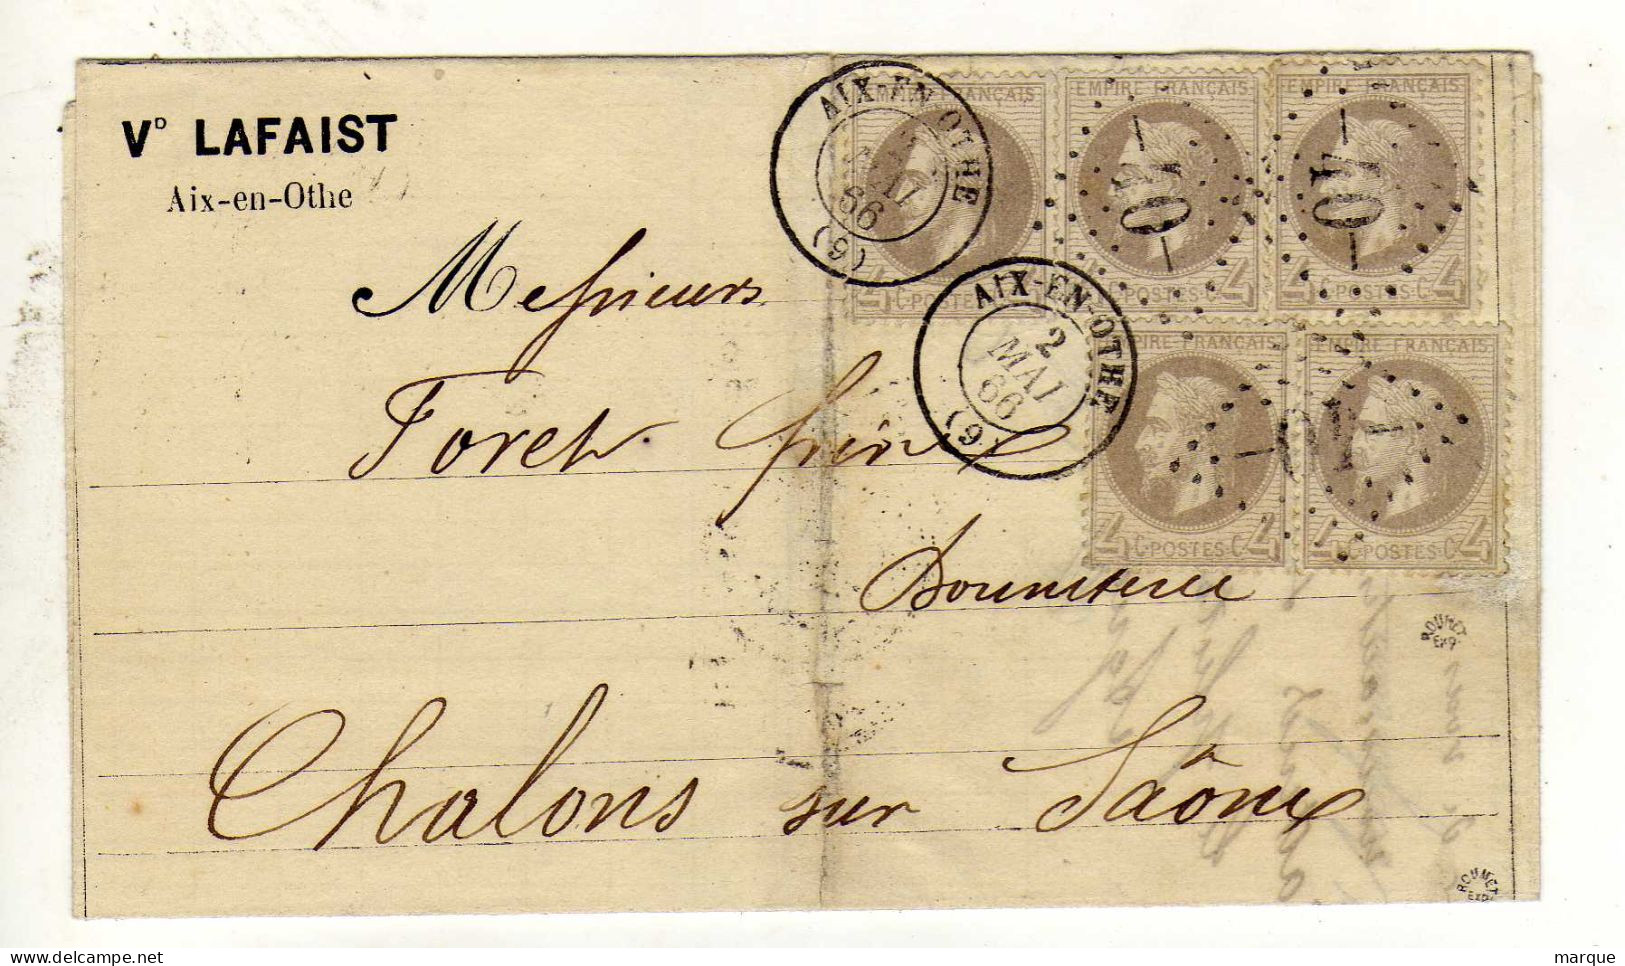 Document Avec 5 Timbres 4c Gris Perle Oblitération 02/05/1866 - 1849-1876: Période Classique